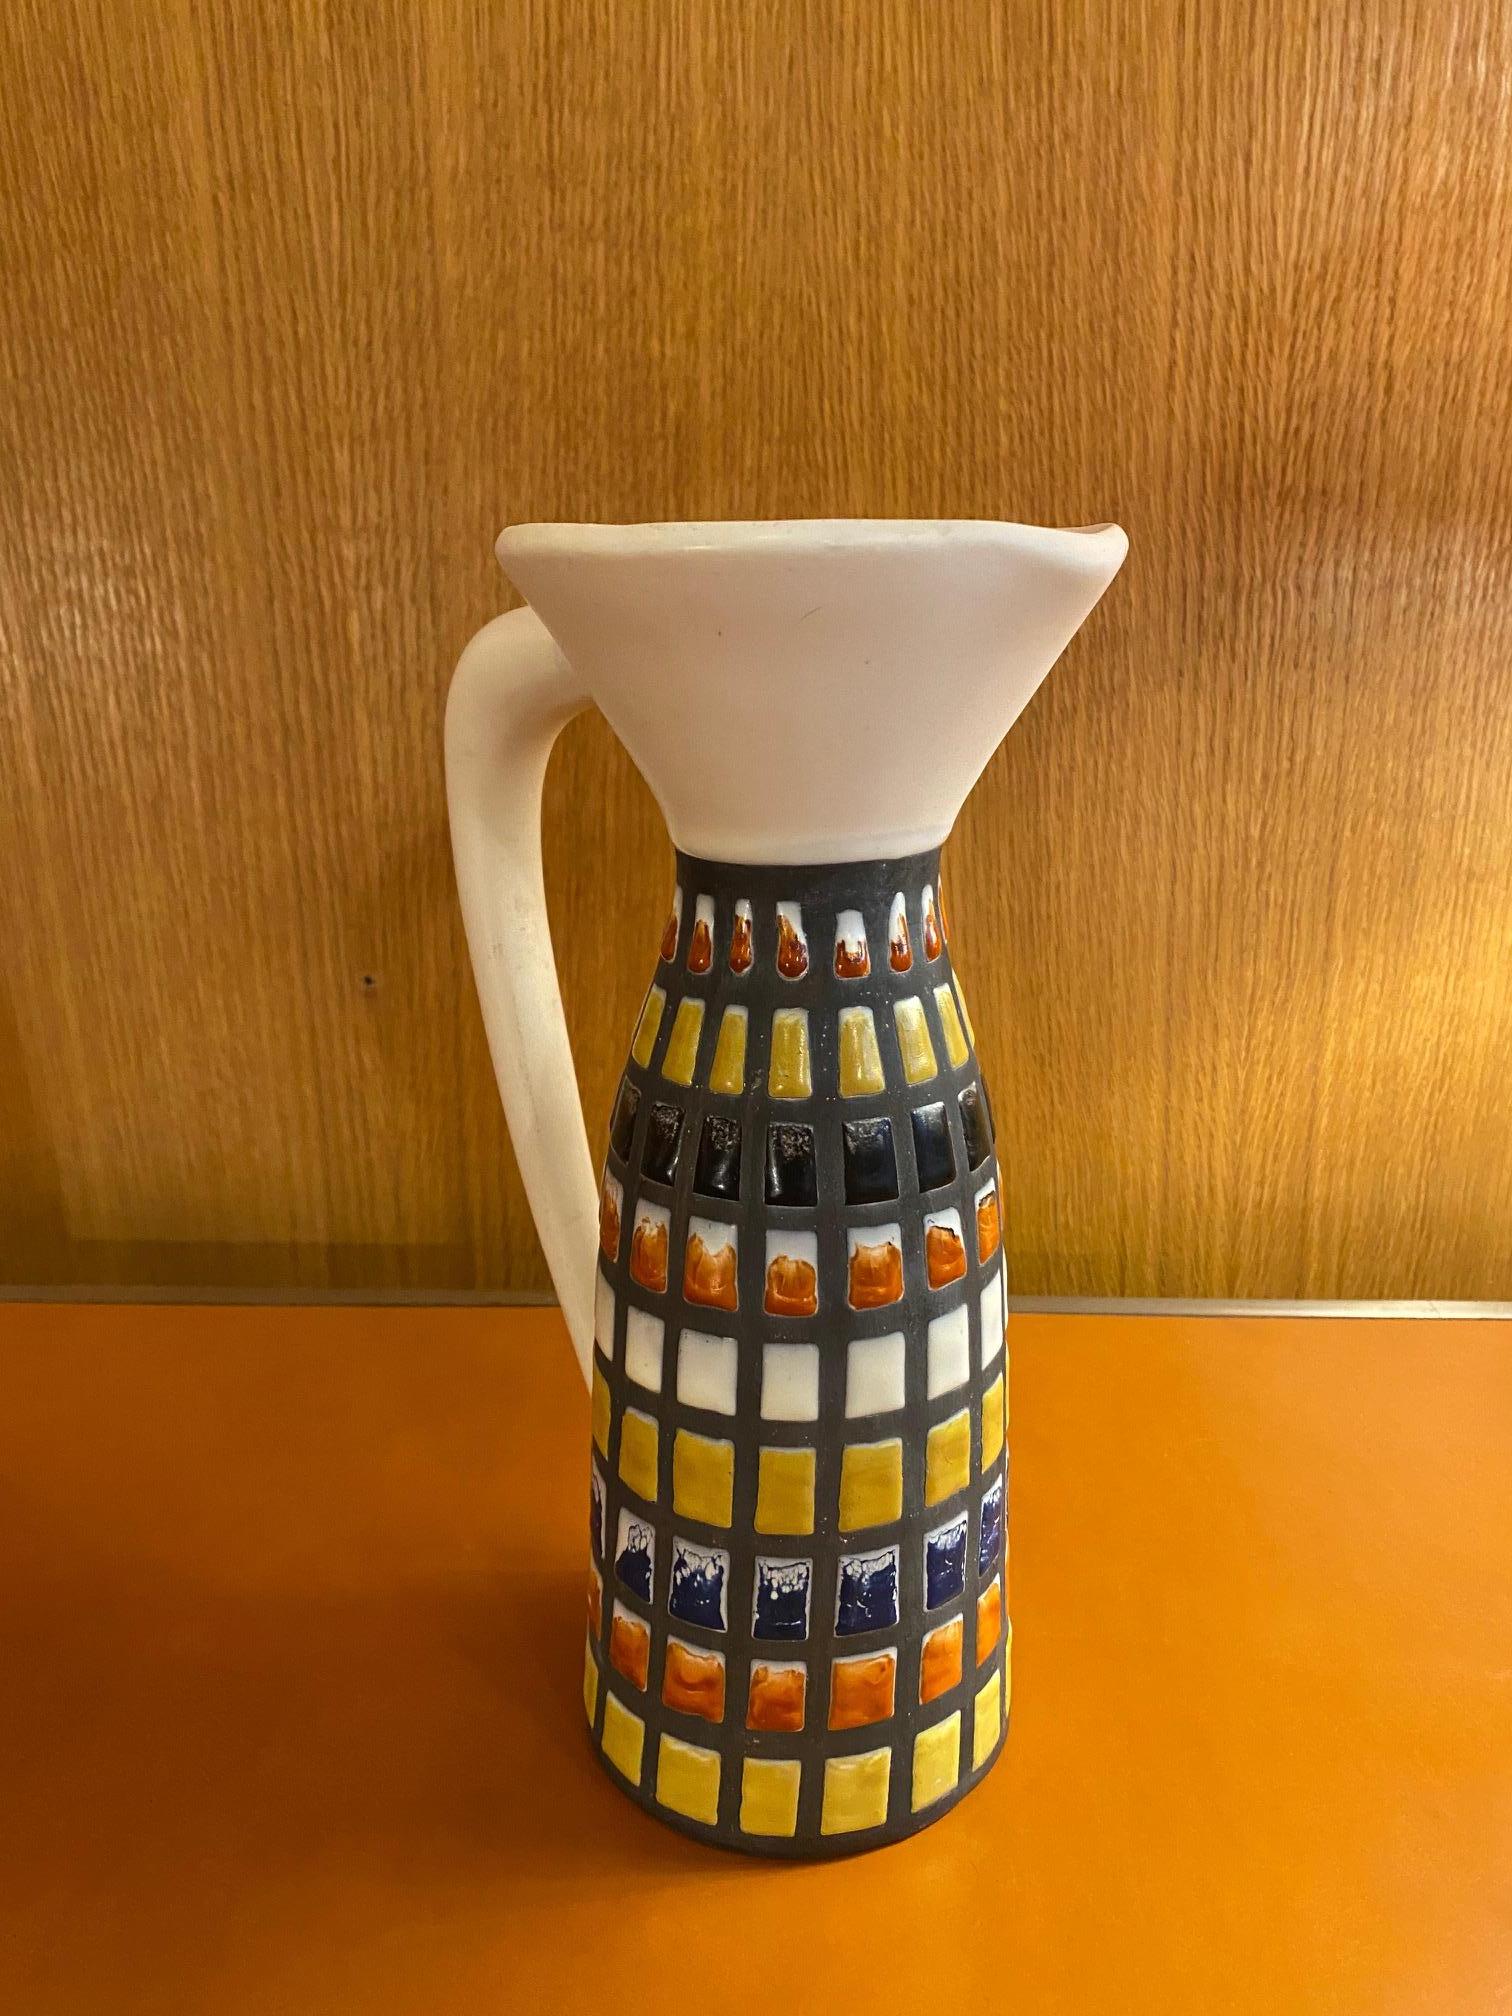 Krug / Vase von Roger Capron, Frankreich, 1960er Jahre
Unterzeichnet 